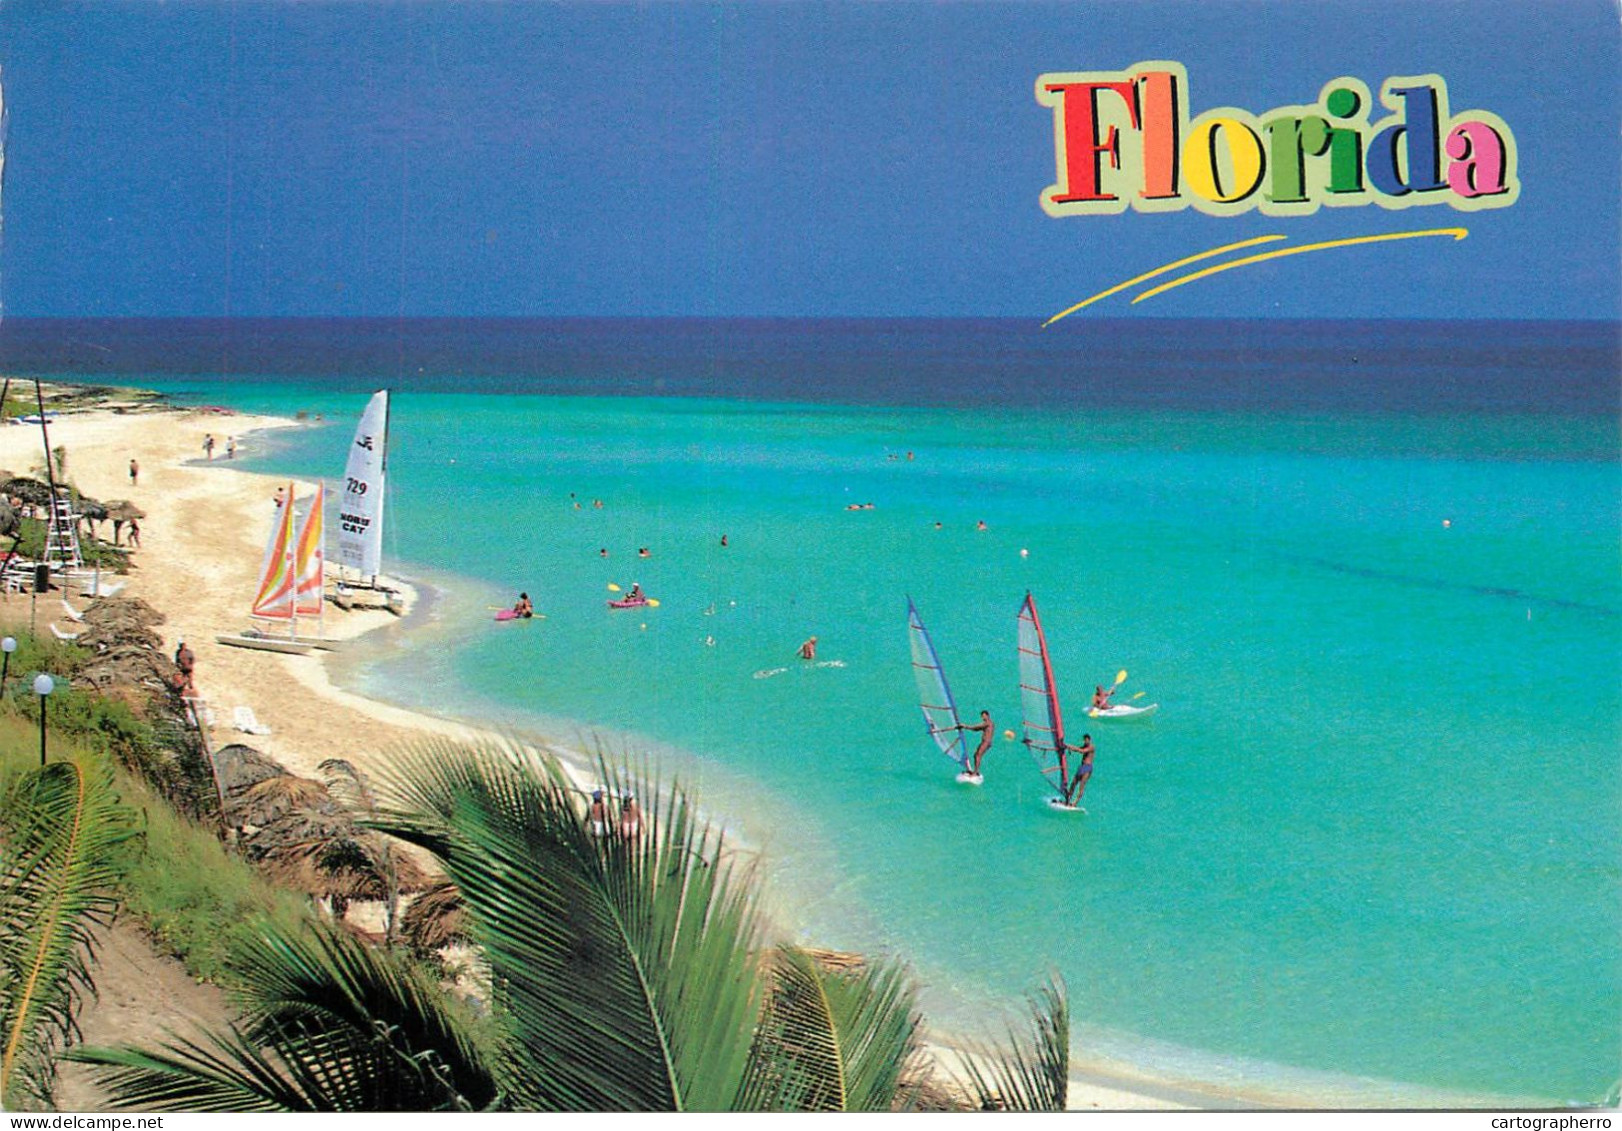 Postcard United States > FL - Florida > Miami Beach - Miami Beach